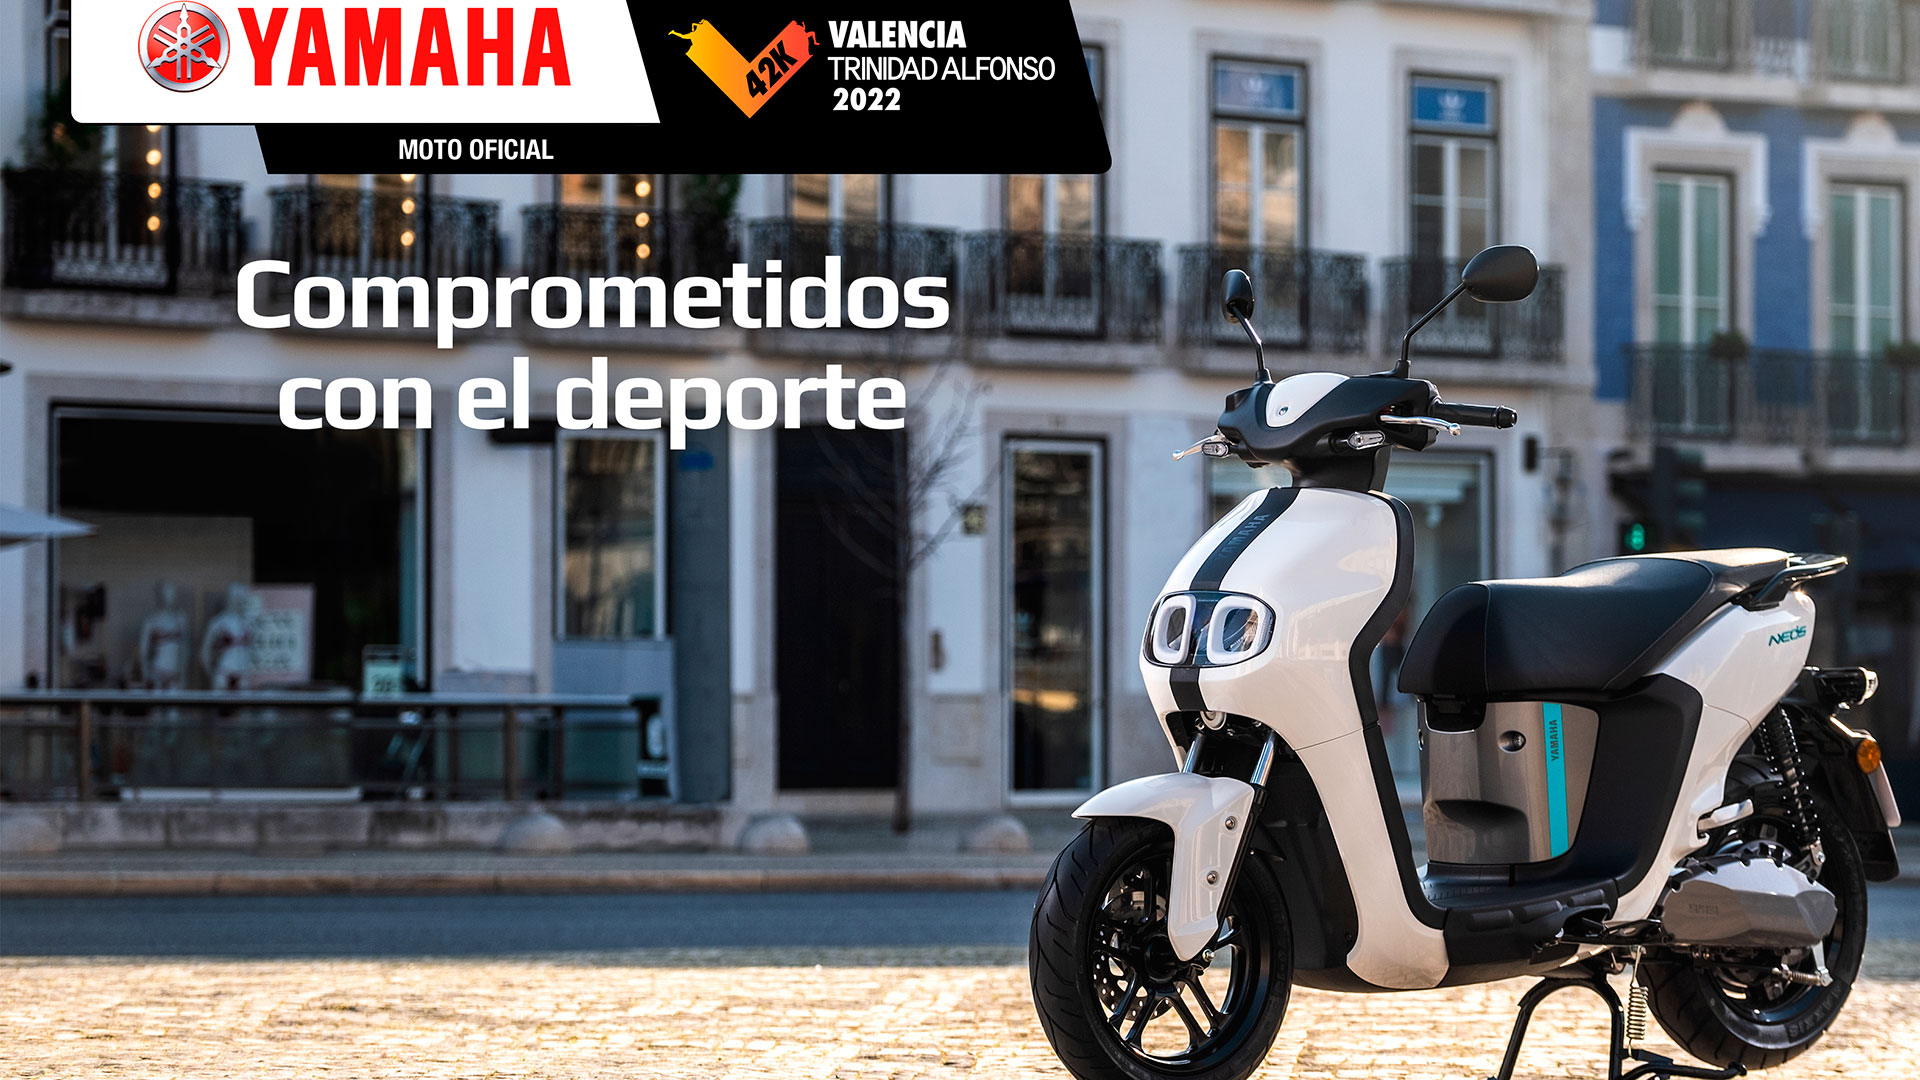 El Yamaha Neos será la moto oficial del Maratón de Valencia